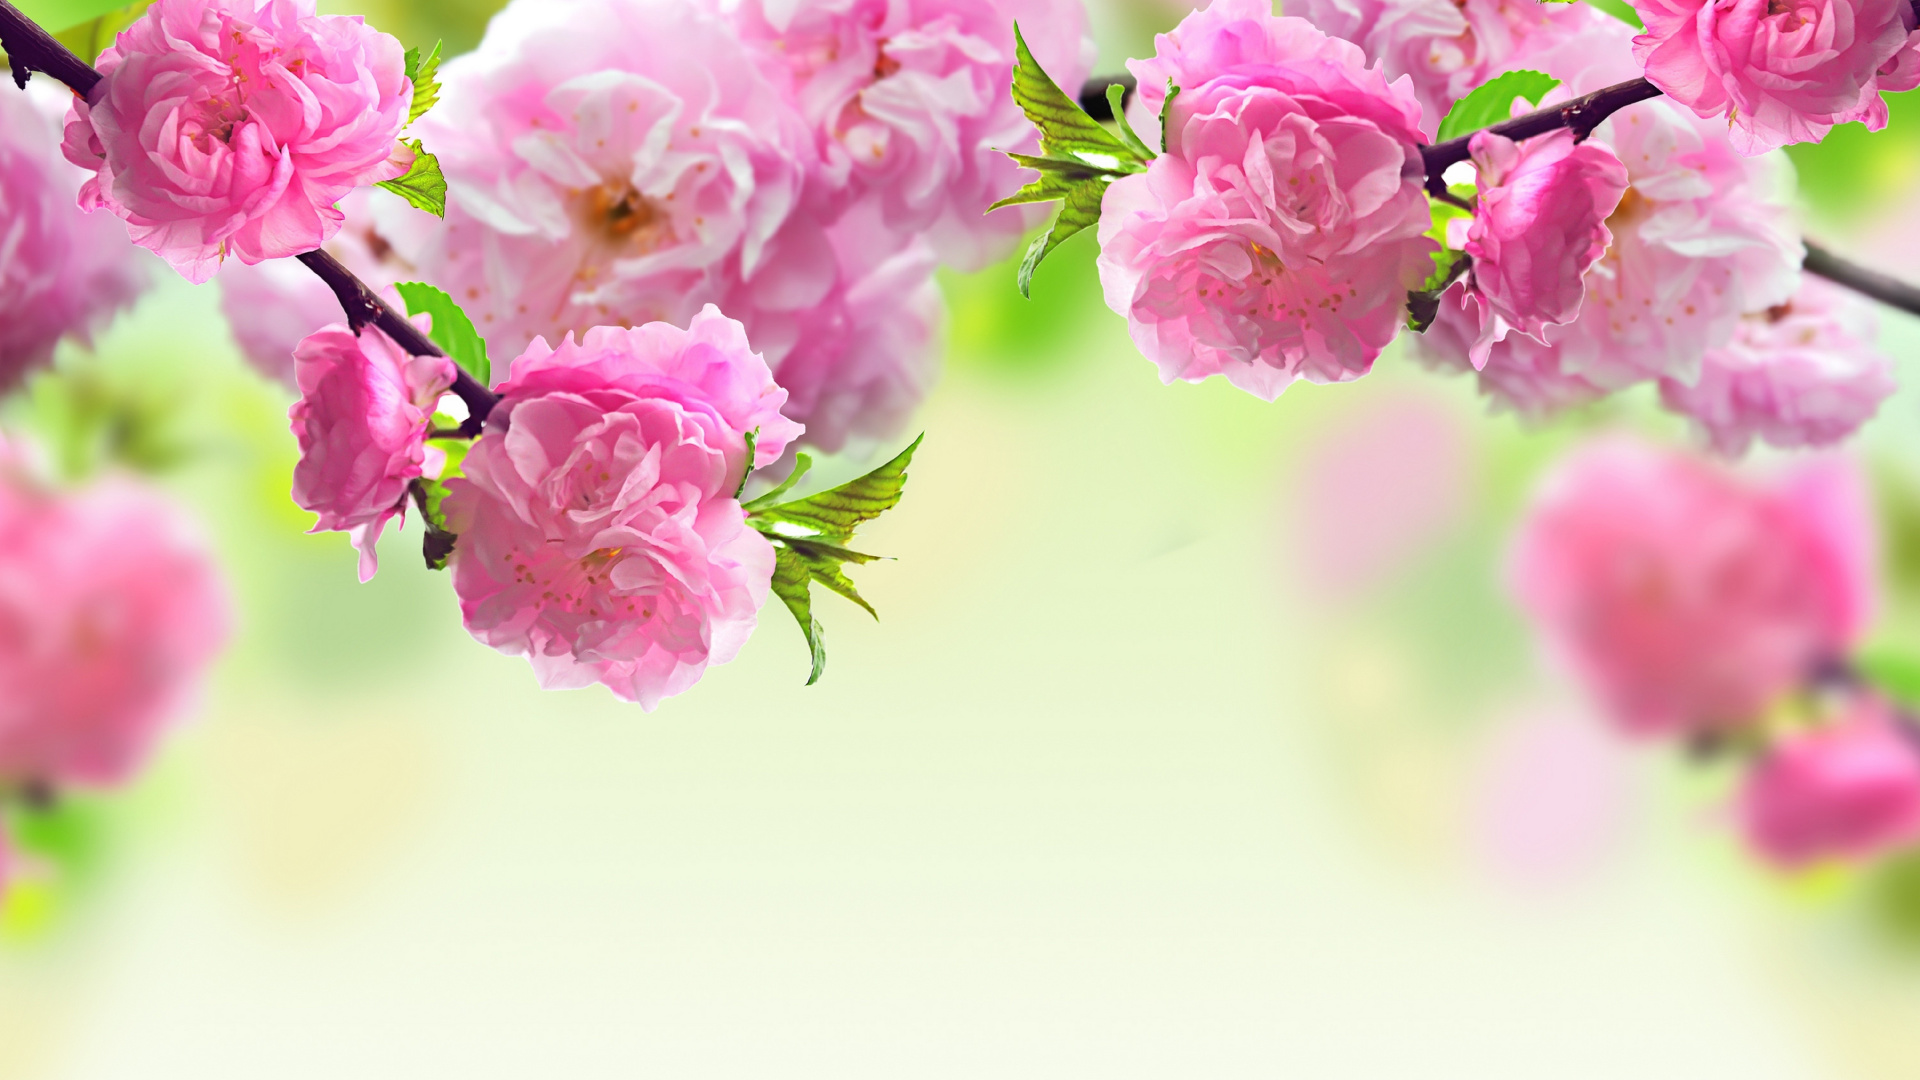 弹簧, 粉红色, 开花, 显花植物, 手持设备 壁纸 1920x1080 允许